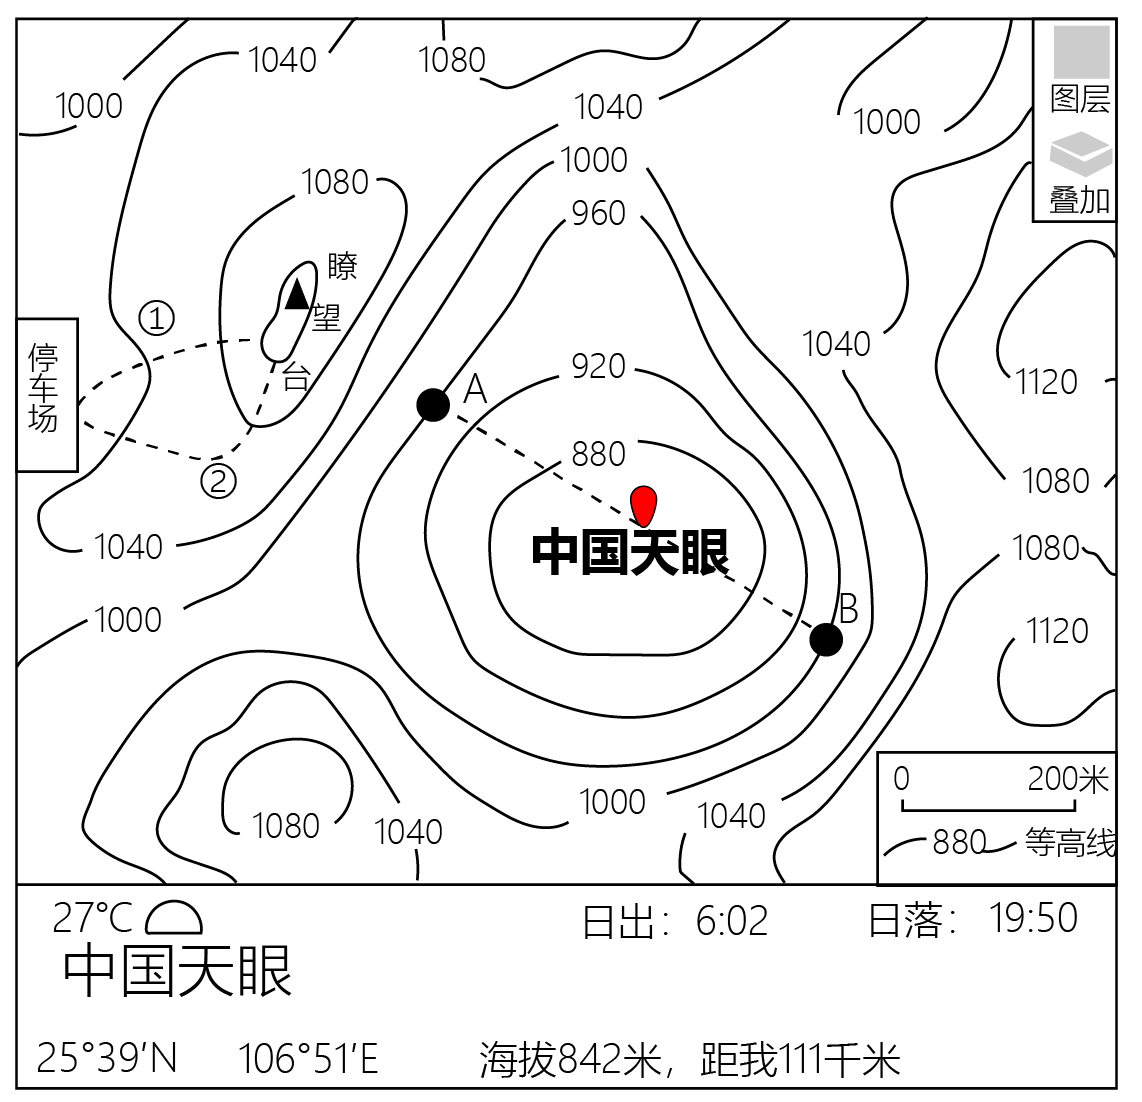 阅读图文材料,完成下列要求中国天眼(又称fast)位于贵州省平塘县,